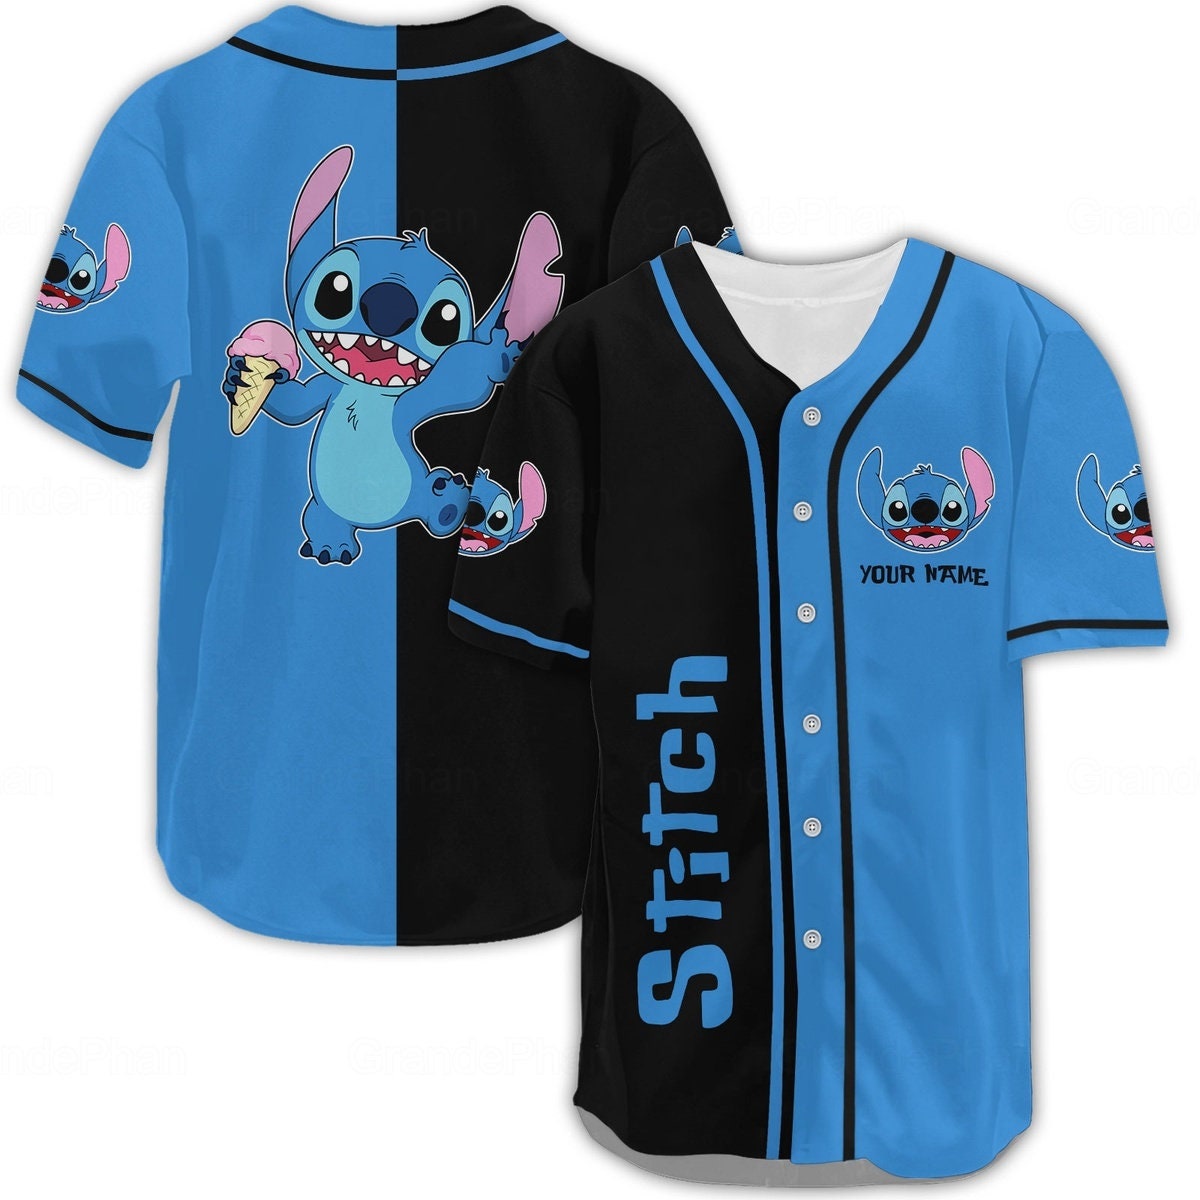 Stitch Baseball Jersey, Stitch Baseball Shirt, Stitch Jersey Shirt, Stitch Shirt For Men